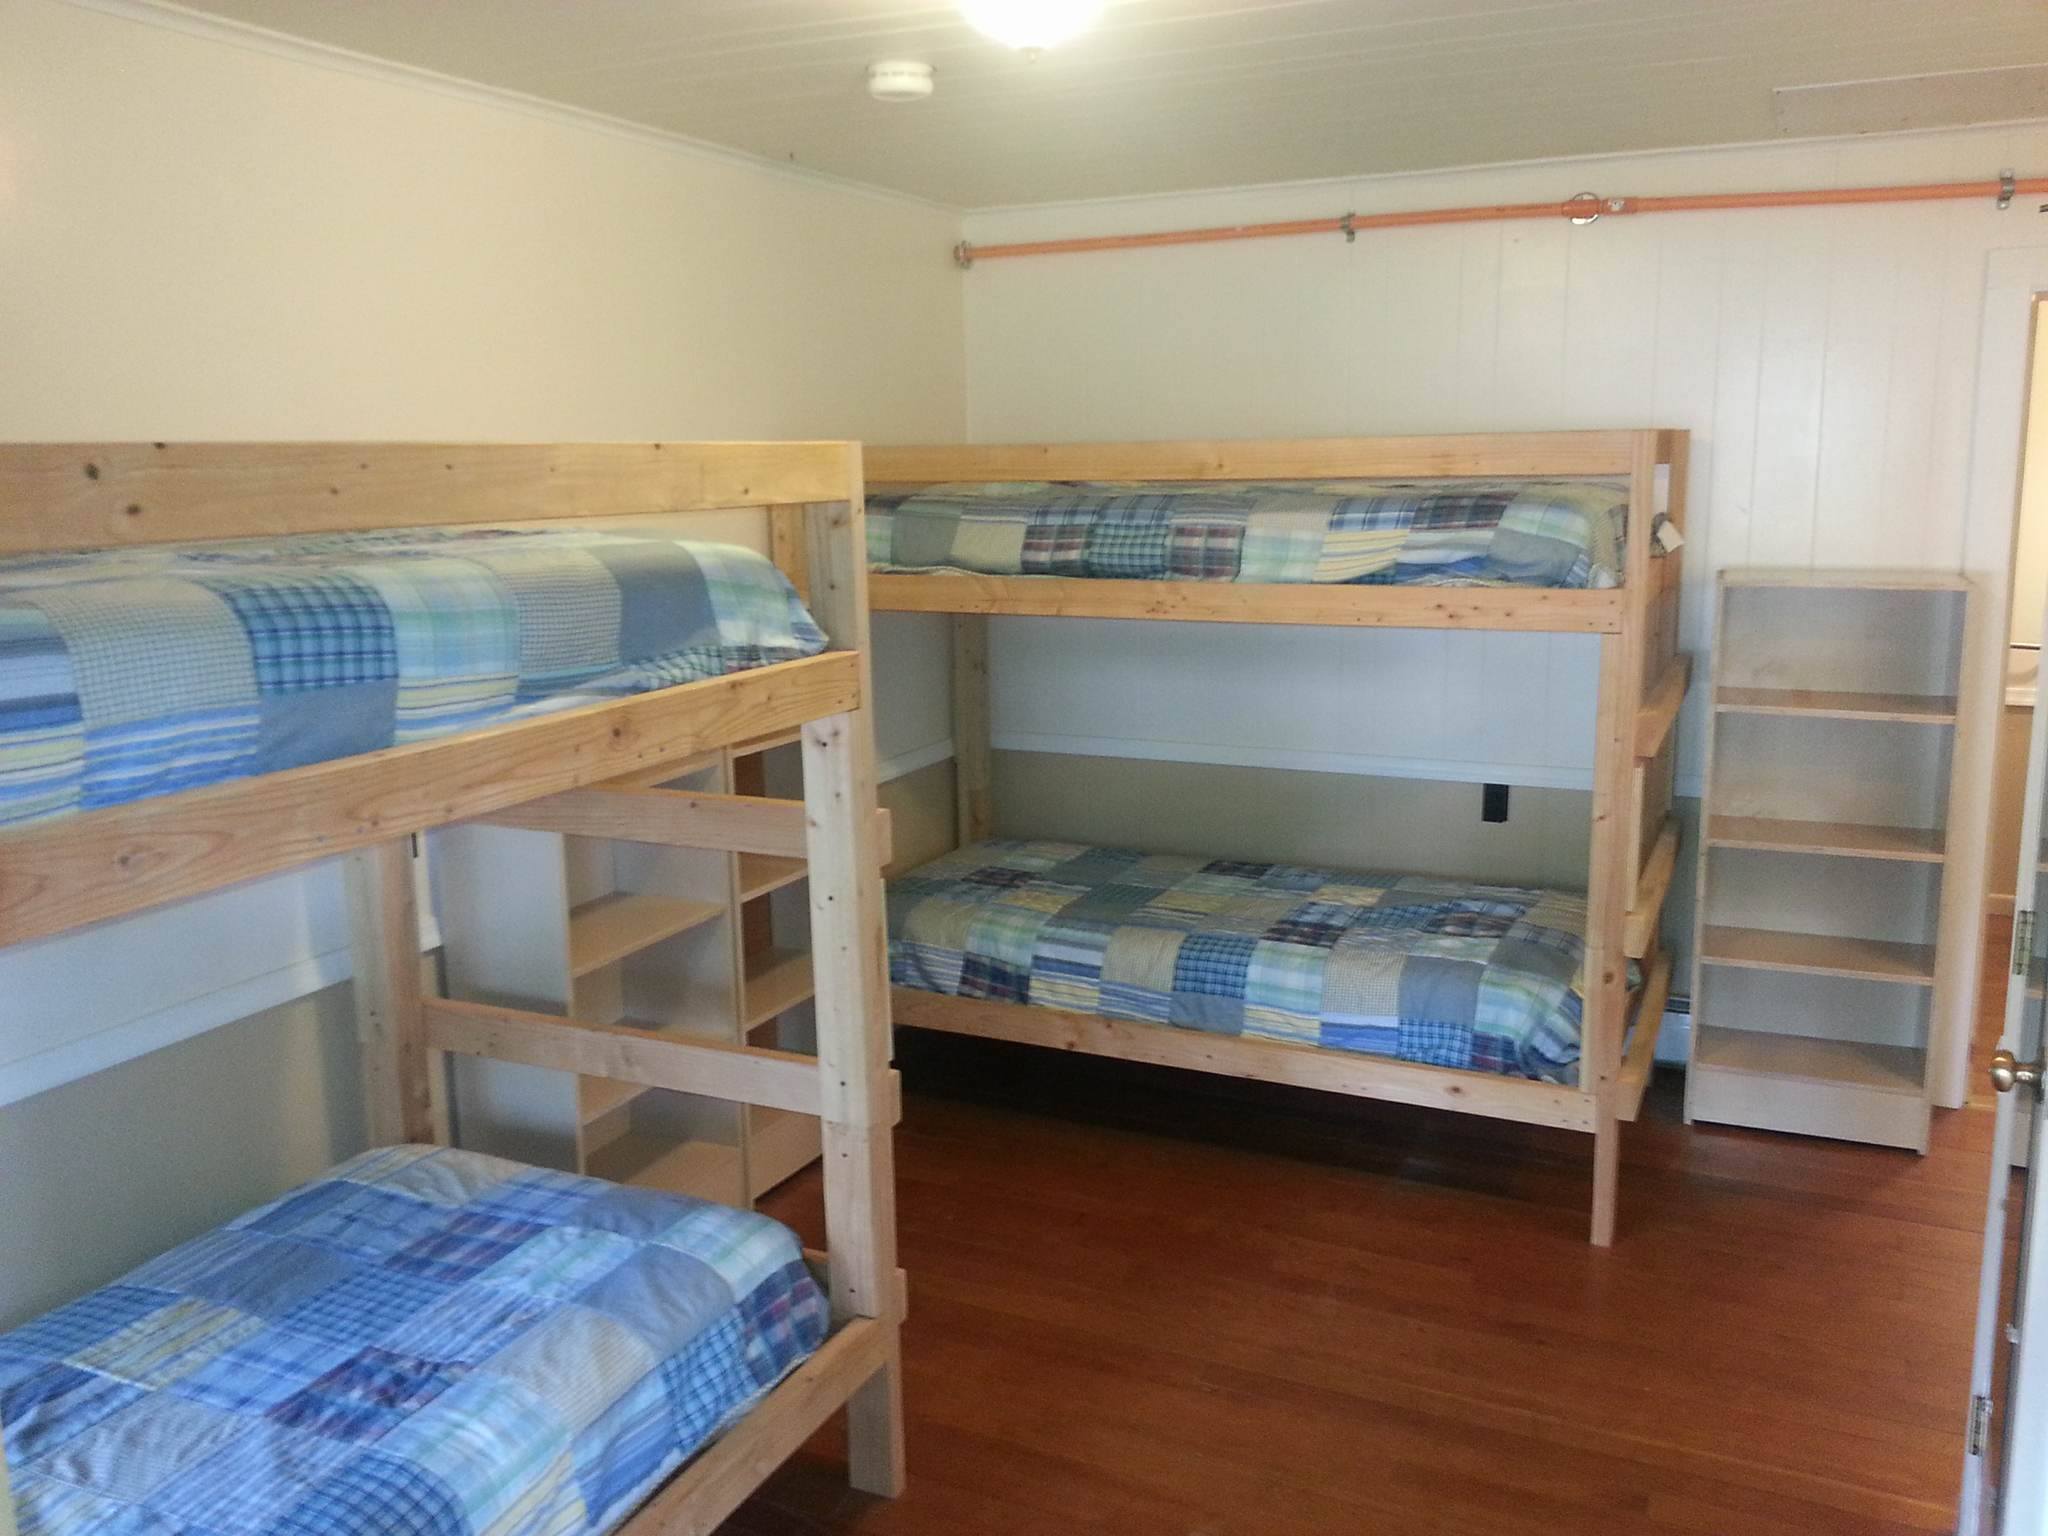 bunk beds in room.jpg